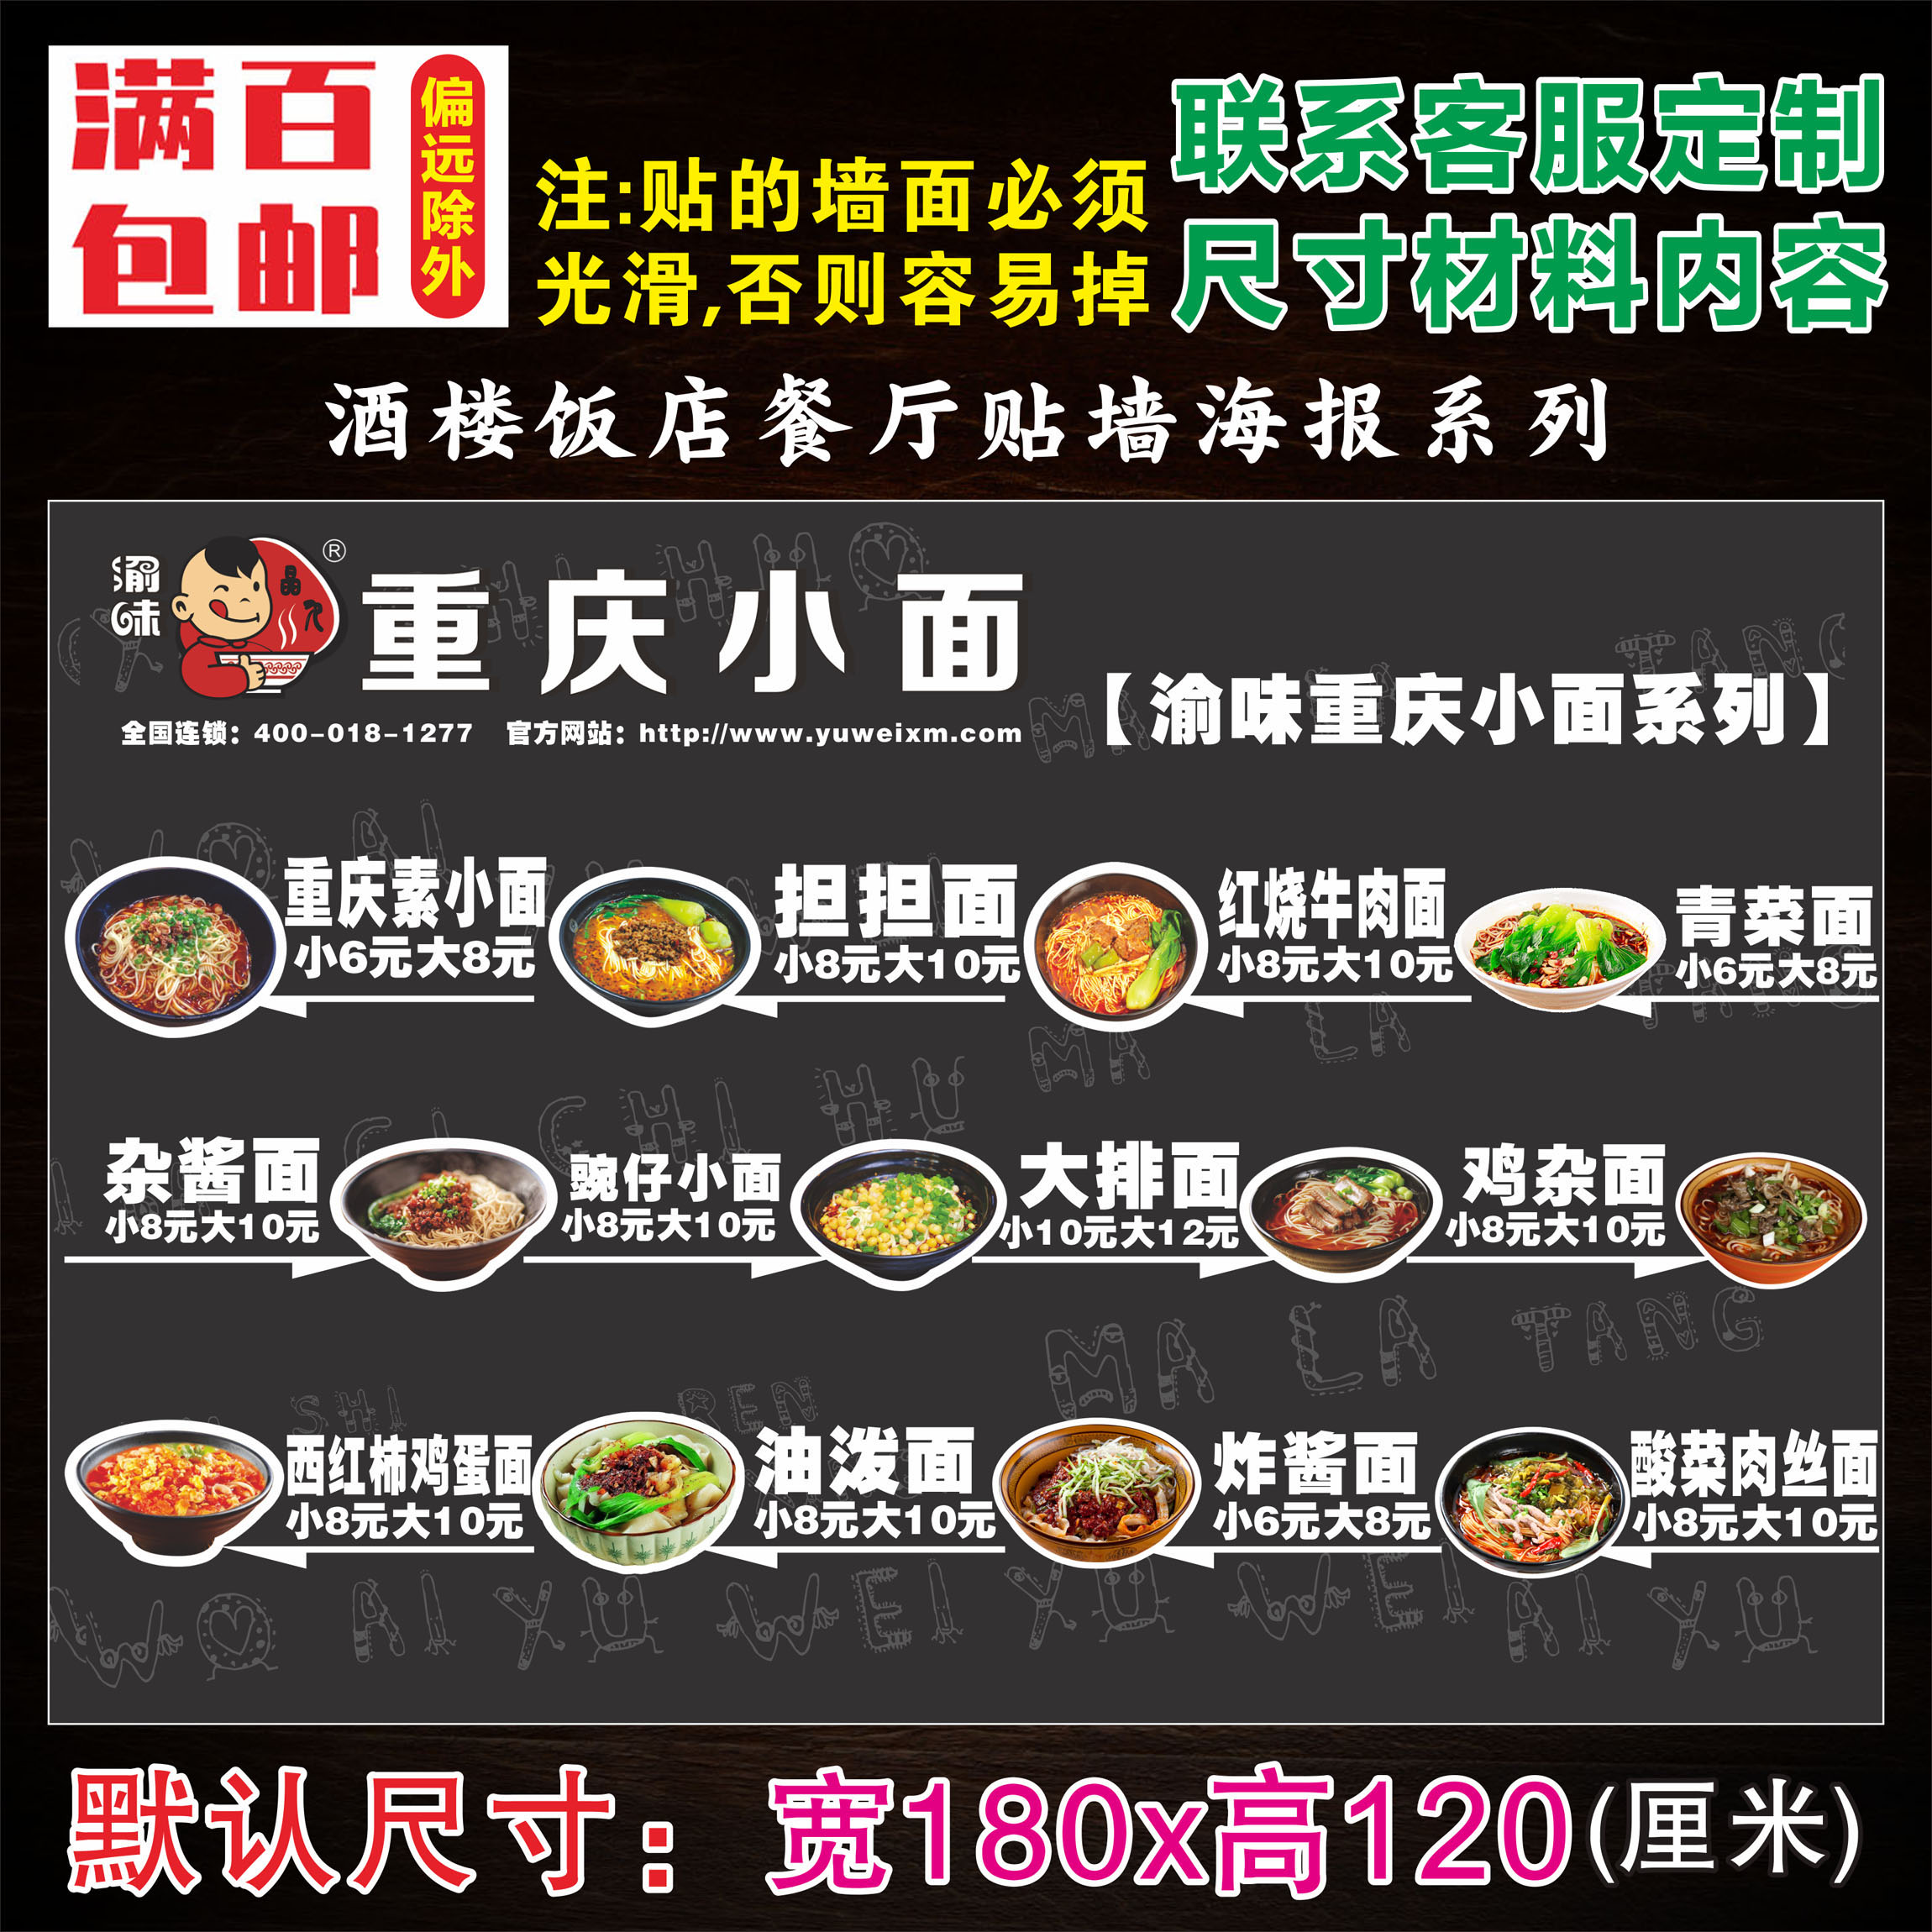 重庆小面01 餐饮业饭店酒楼小吃小食店菜谱菜单餐牌 广告定制